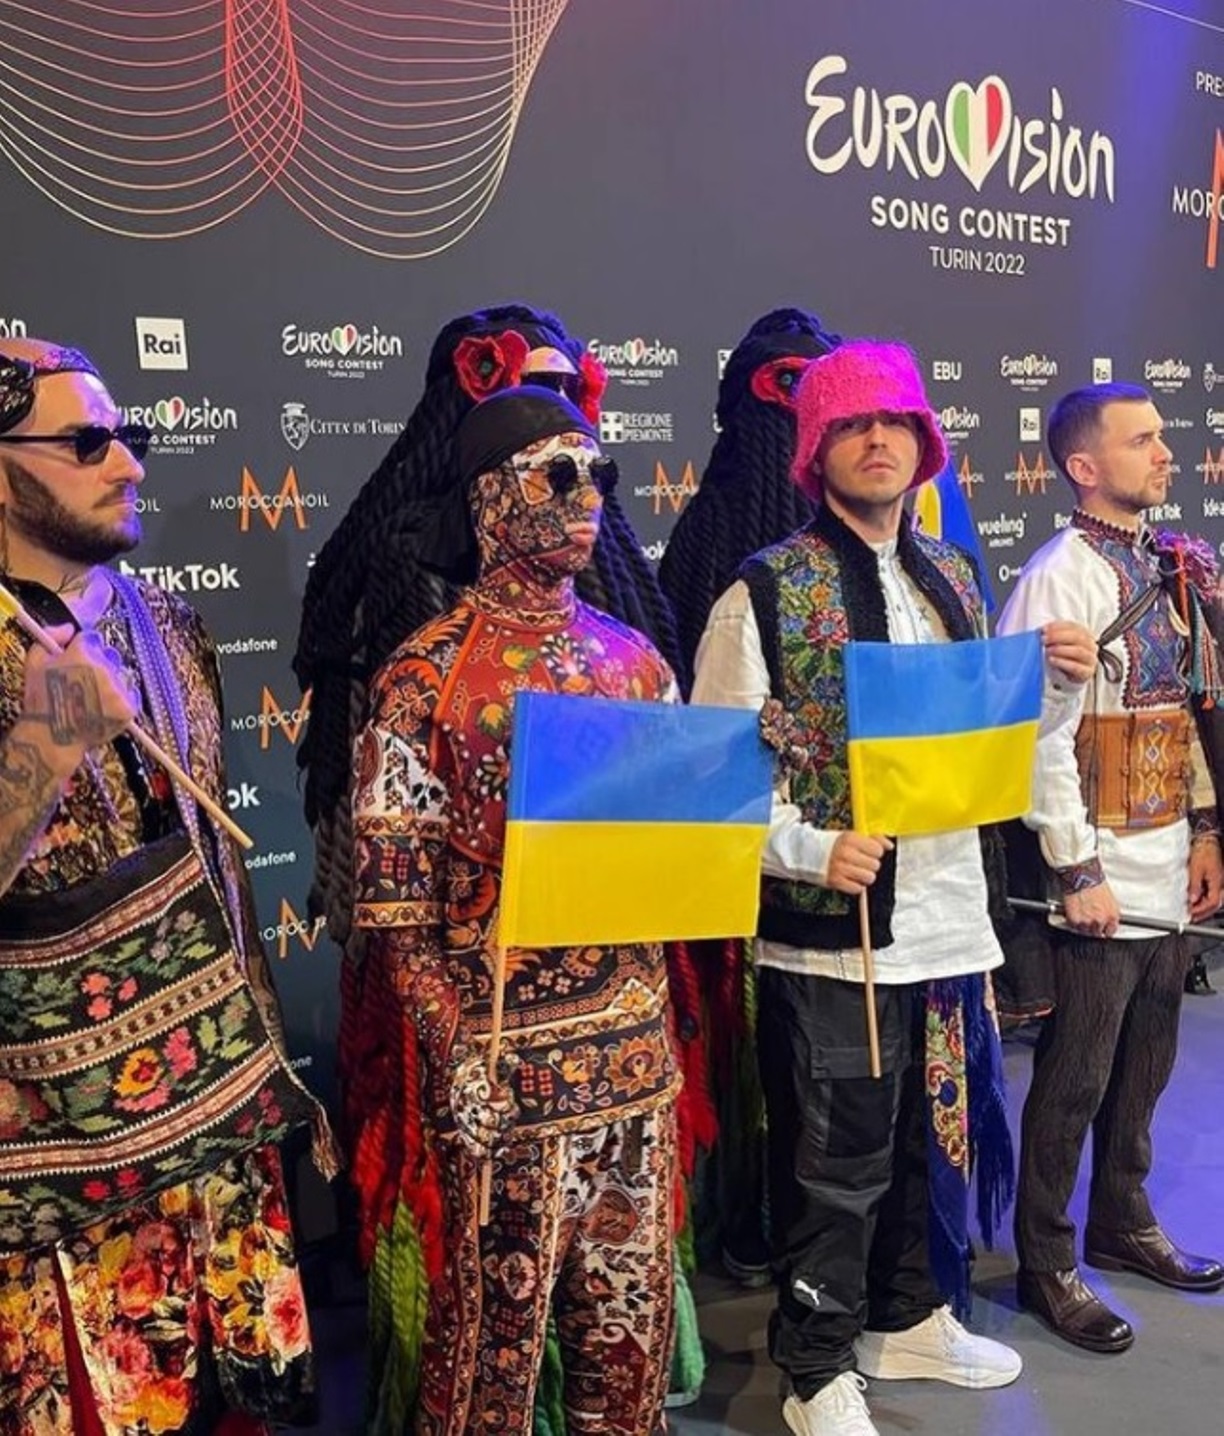 kalush orchestra chi sono vincitori eurovision